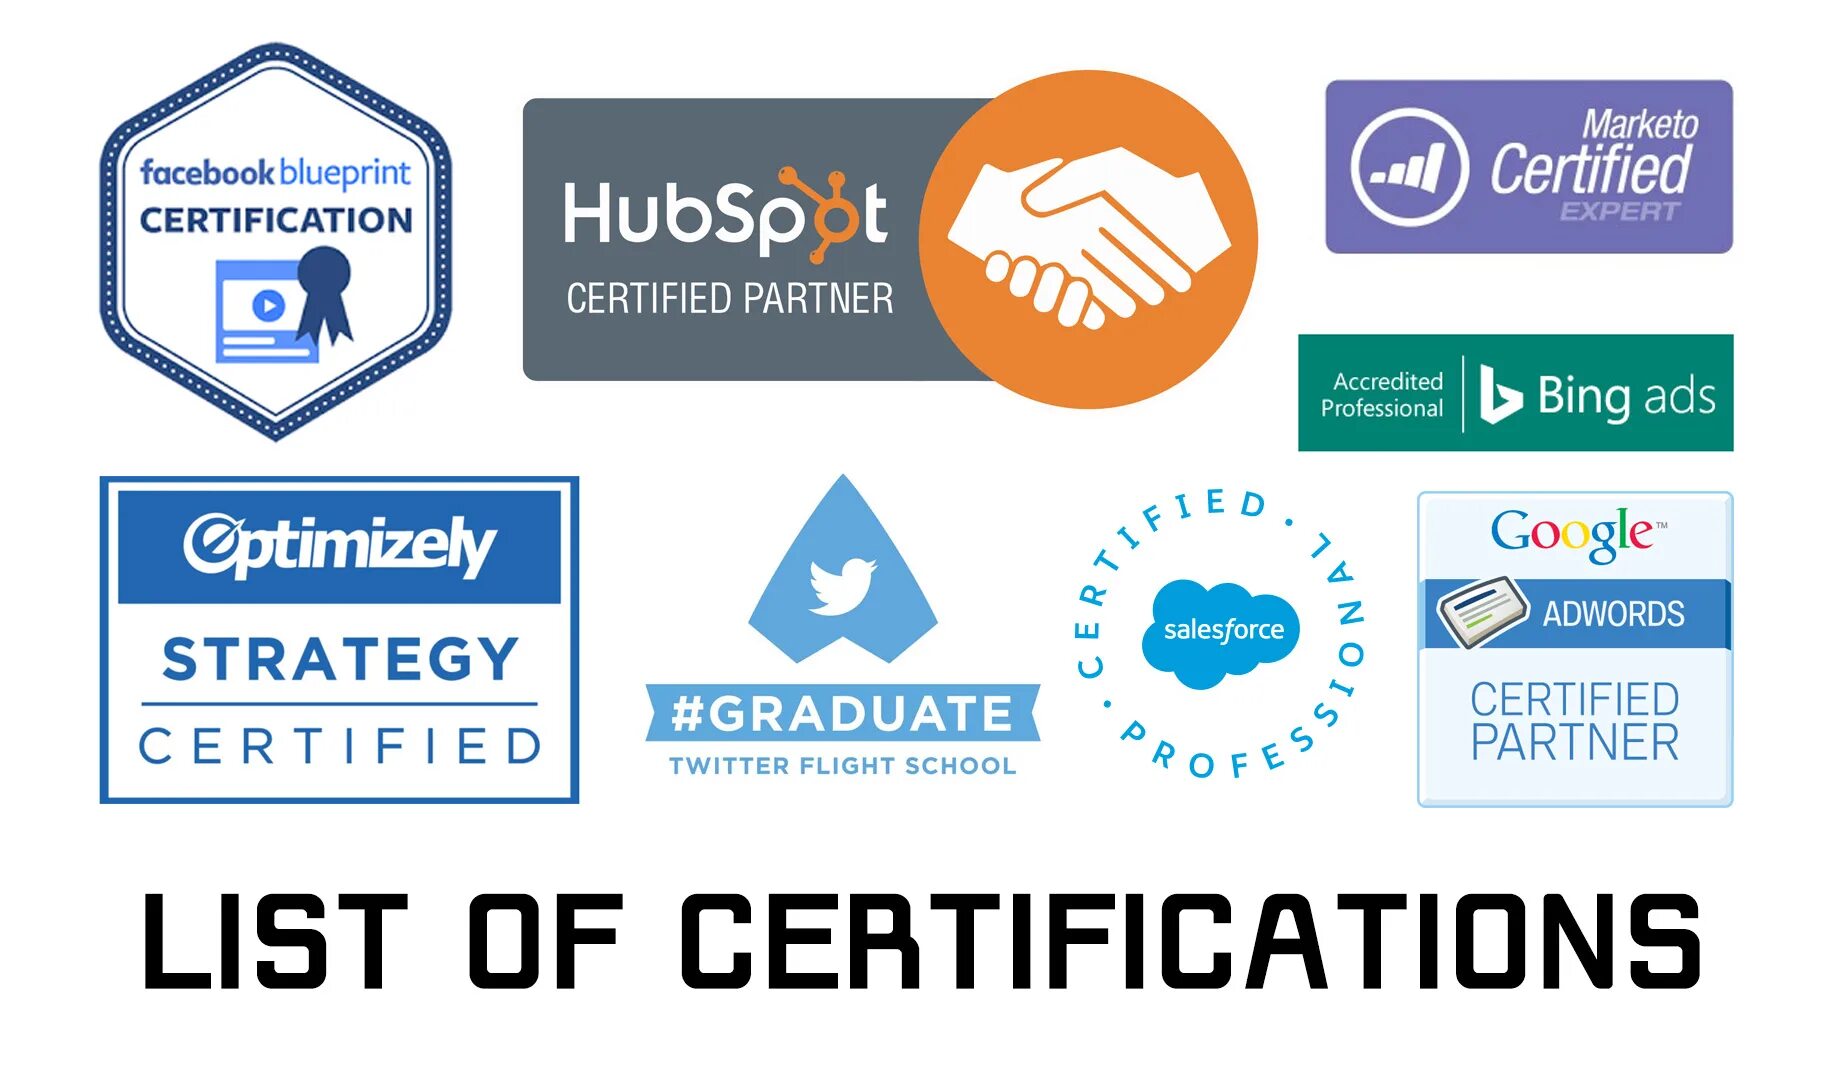 Сертификация рынок. Facebook Blueprint сертификат. Сертификация Фейсбук. Certification Company. Сертификаты партнерская программа.